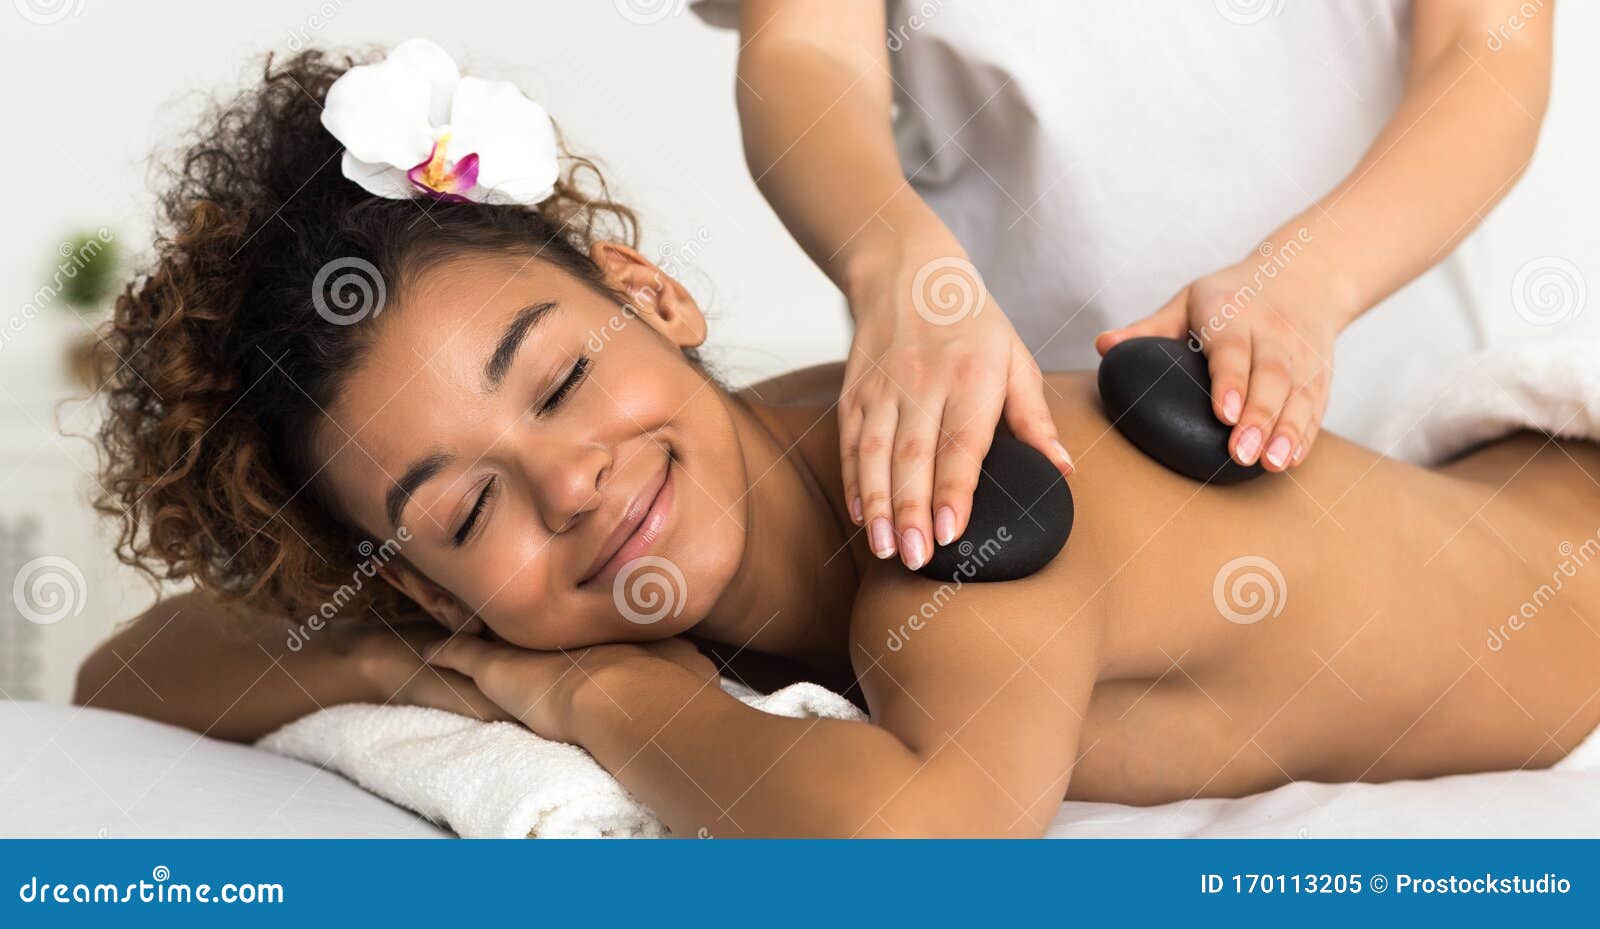 Hot Girl Gets Massage cute porn